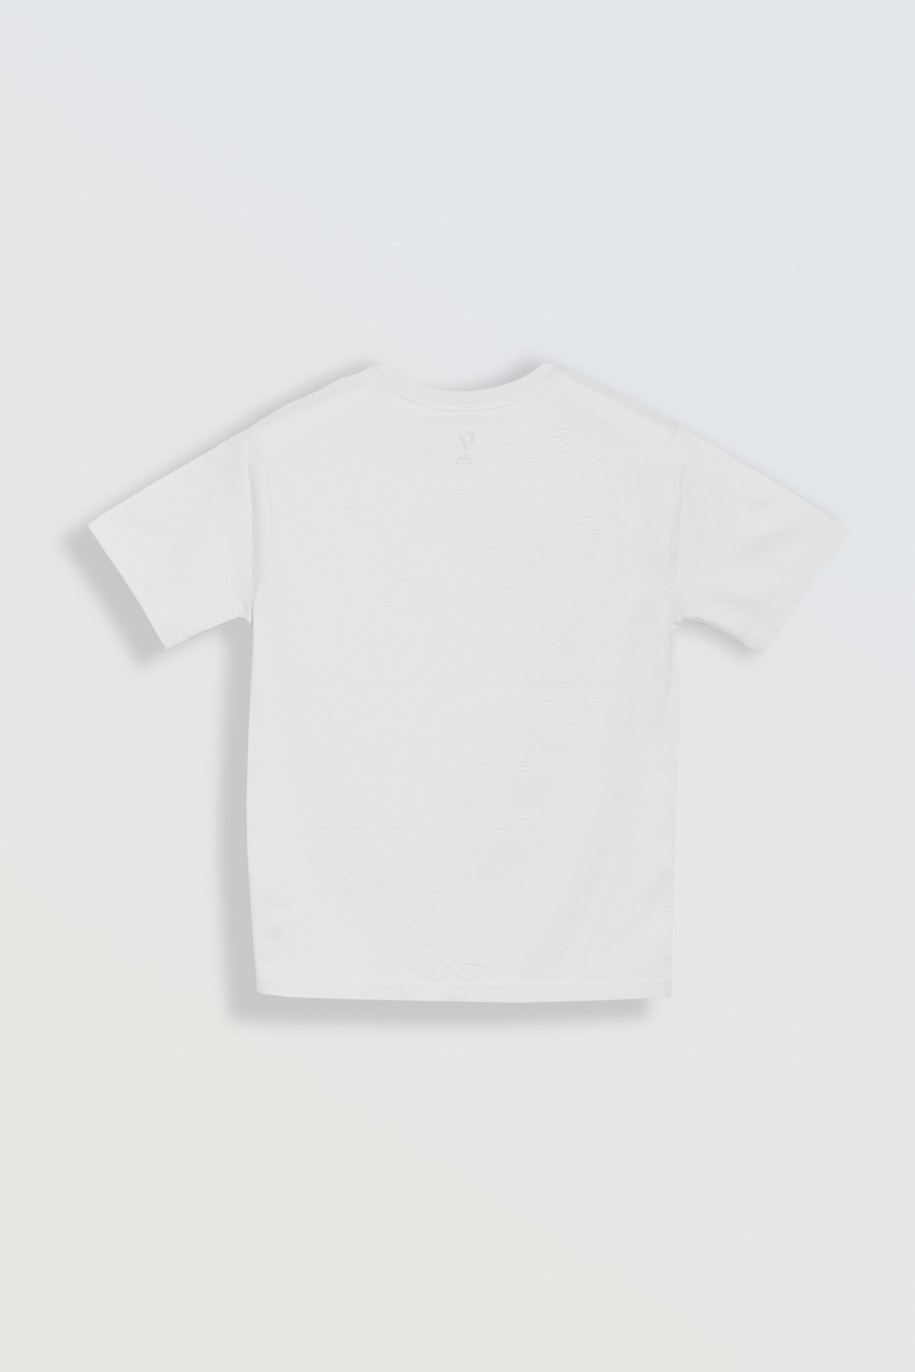 Biały t-shirt z błyszczącym nadrukiem na wysokości piersi - 46847